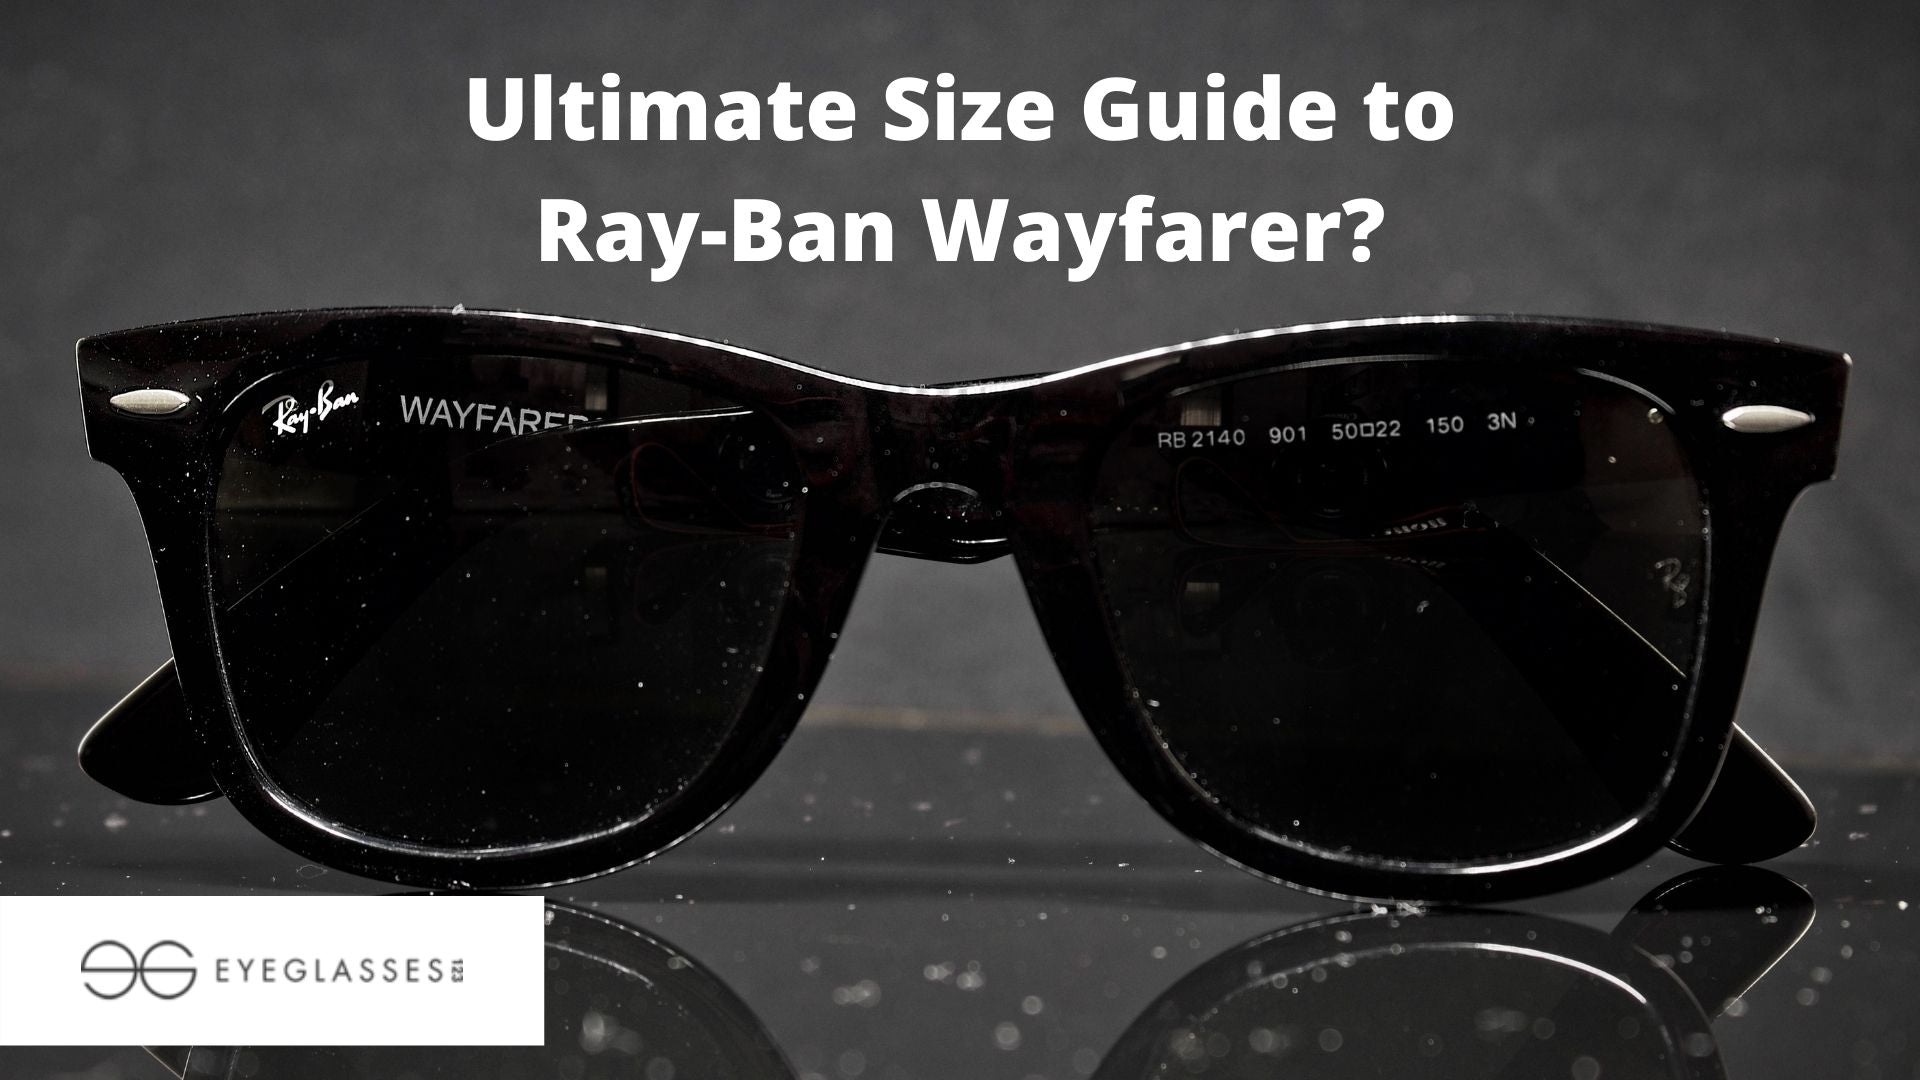 Size Guide to Ray-Ban Wayfarer?